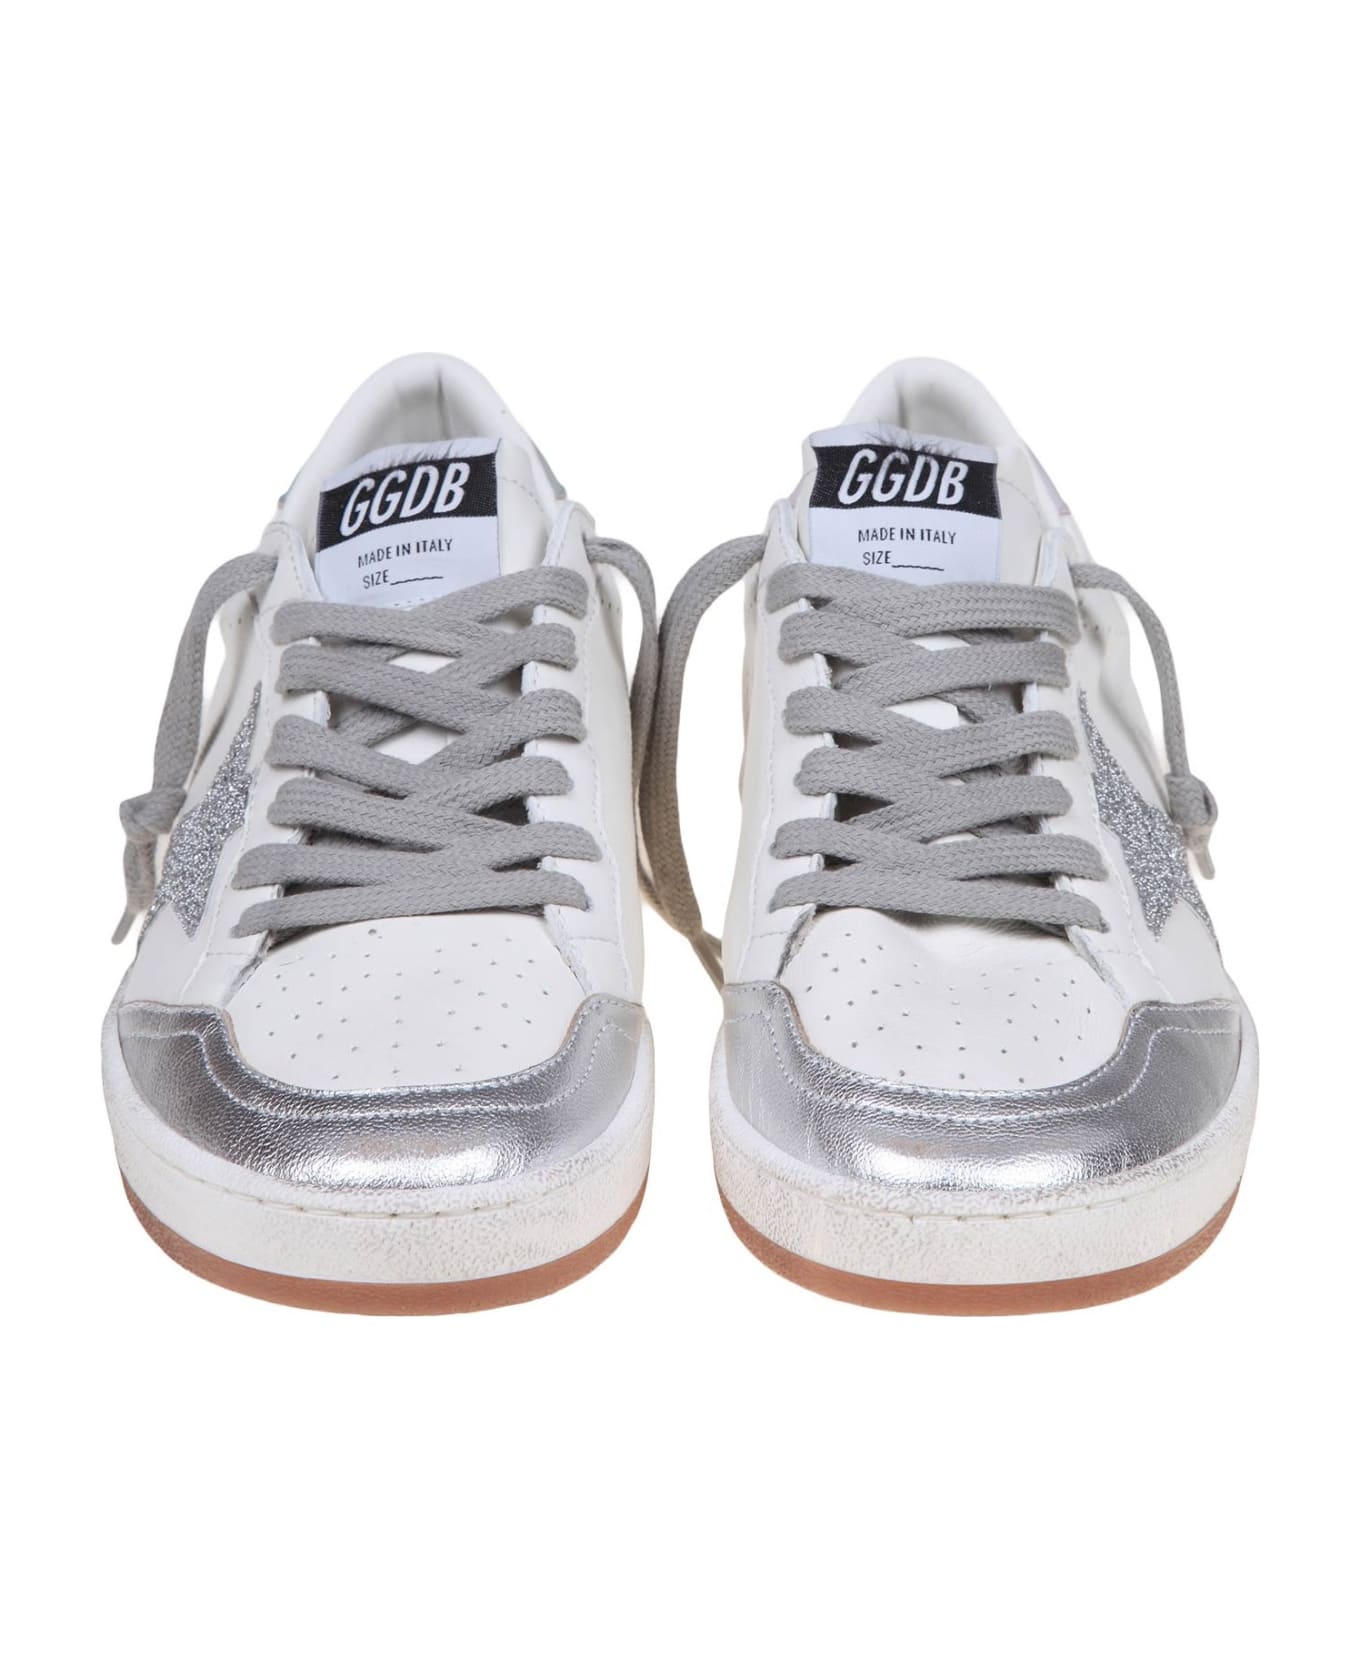 Golden Goose Ball-star Sneakers - White/Silver スニーカー